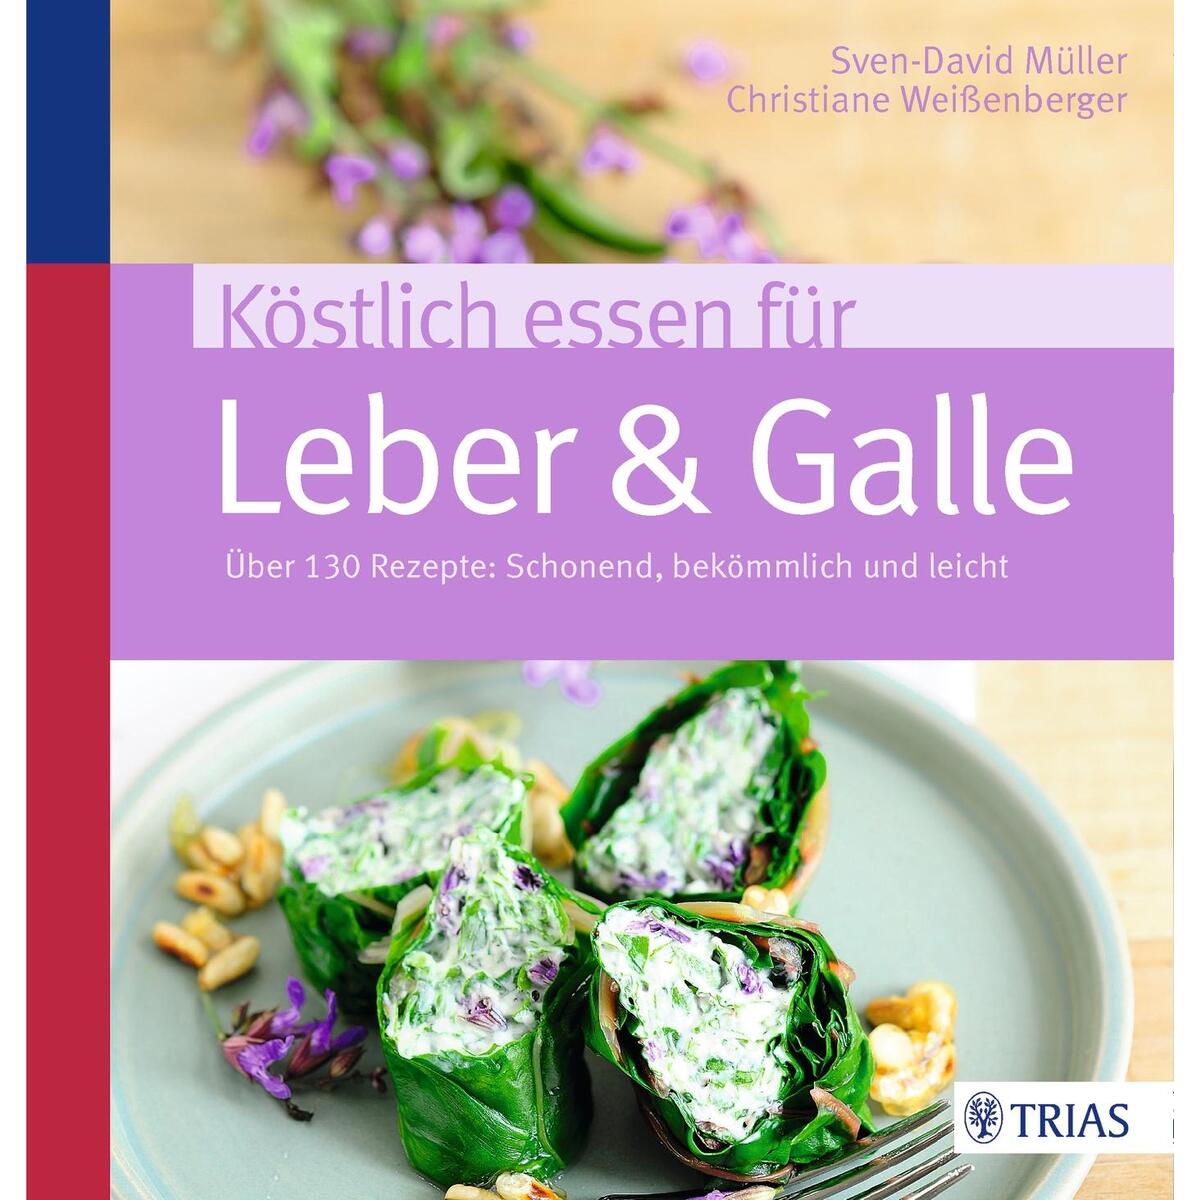 Köstlich essen für Leber & Galle von Trias